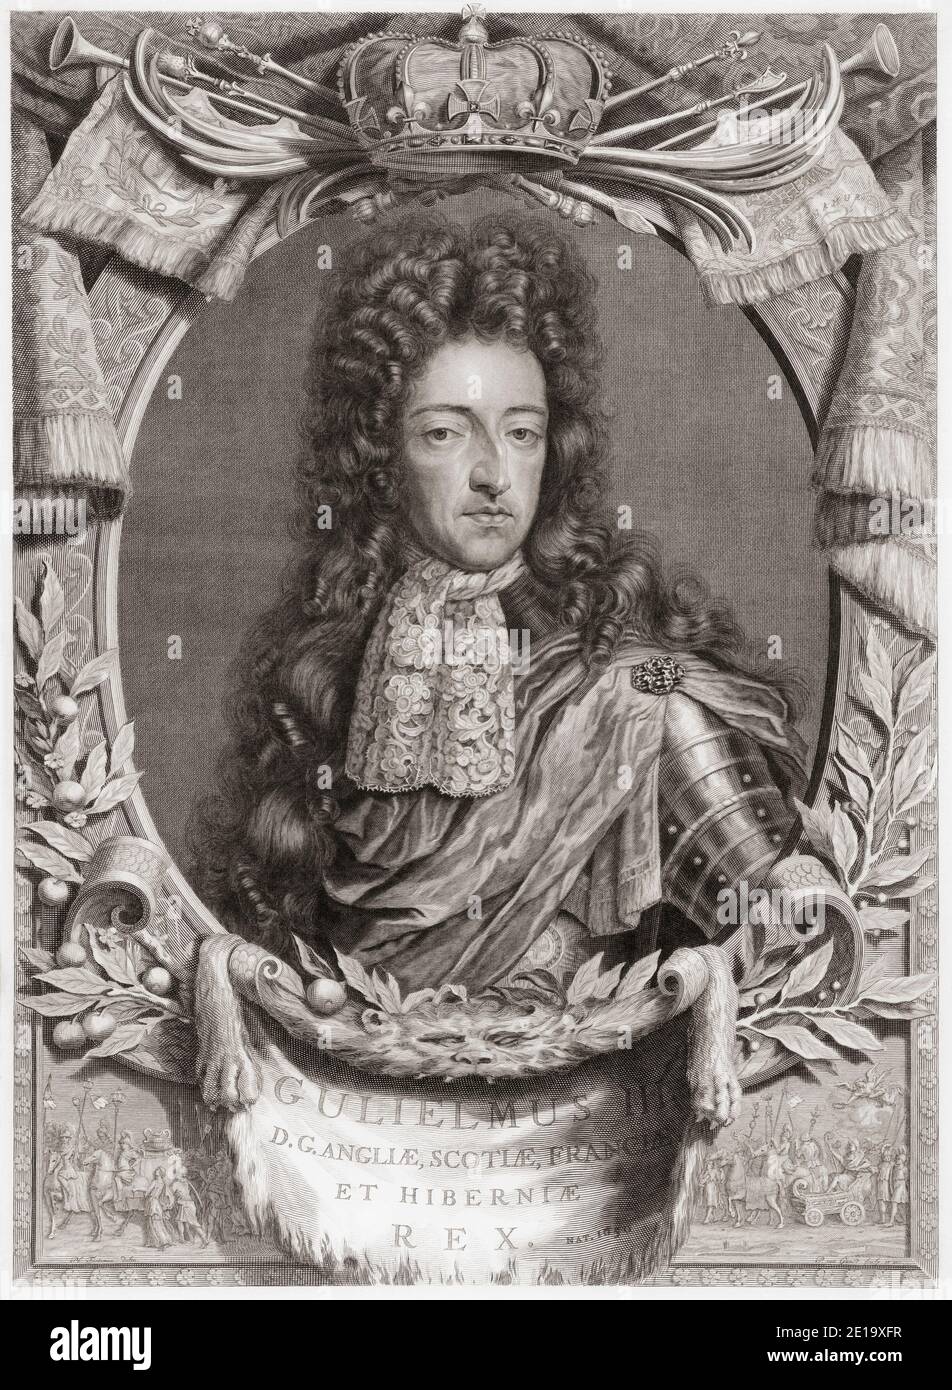 König Wilhelm III. Von England, 1650 bis 1702, Prinz von Oranien. Stadthalter der wichtigsten Provinzen der Niederländischen Republik. Nach einer Arbeit von Pieter van Gunst. Stockfoto